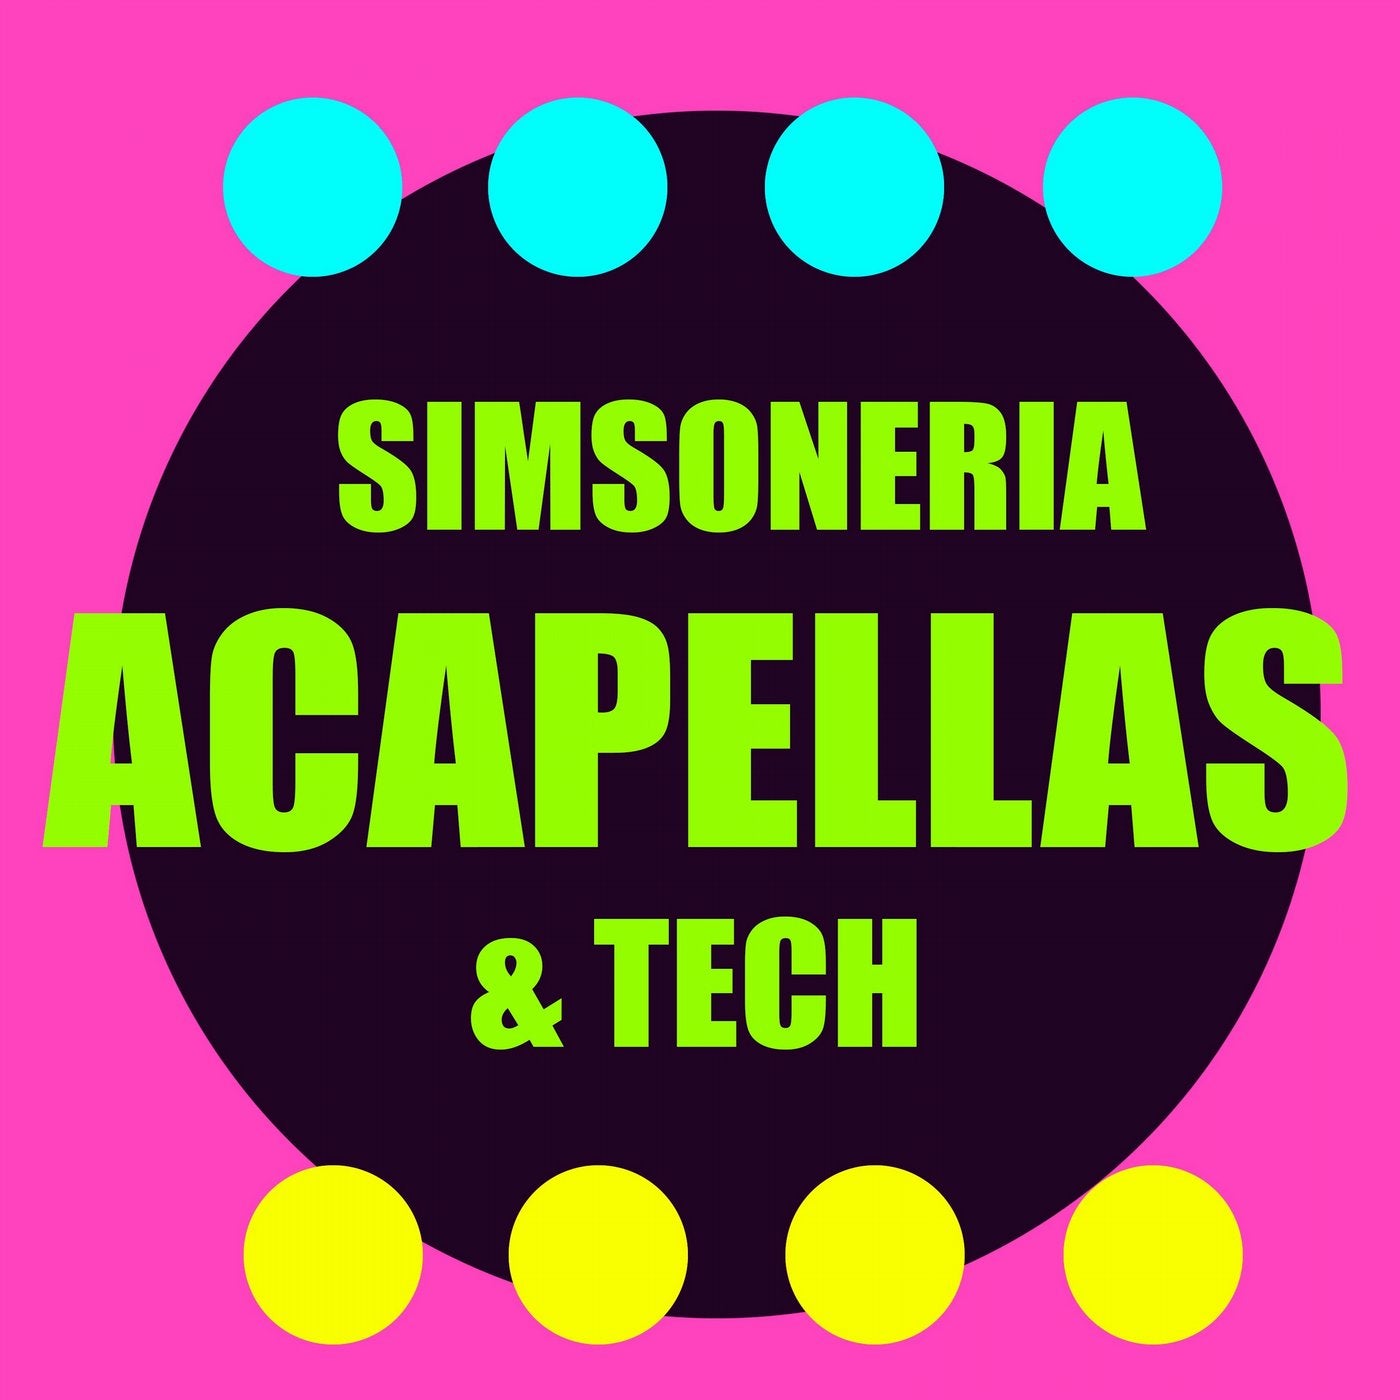 Acapellas & Tech